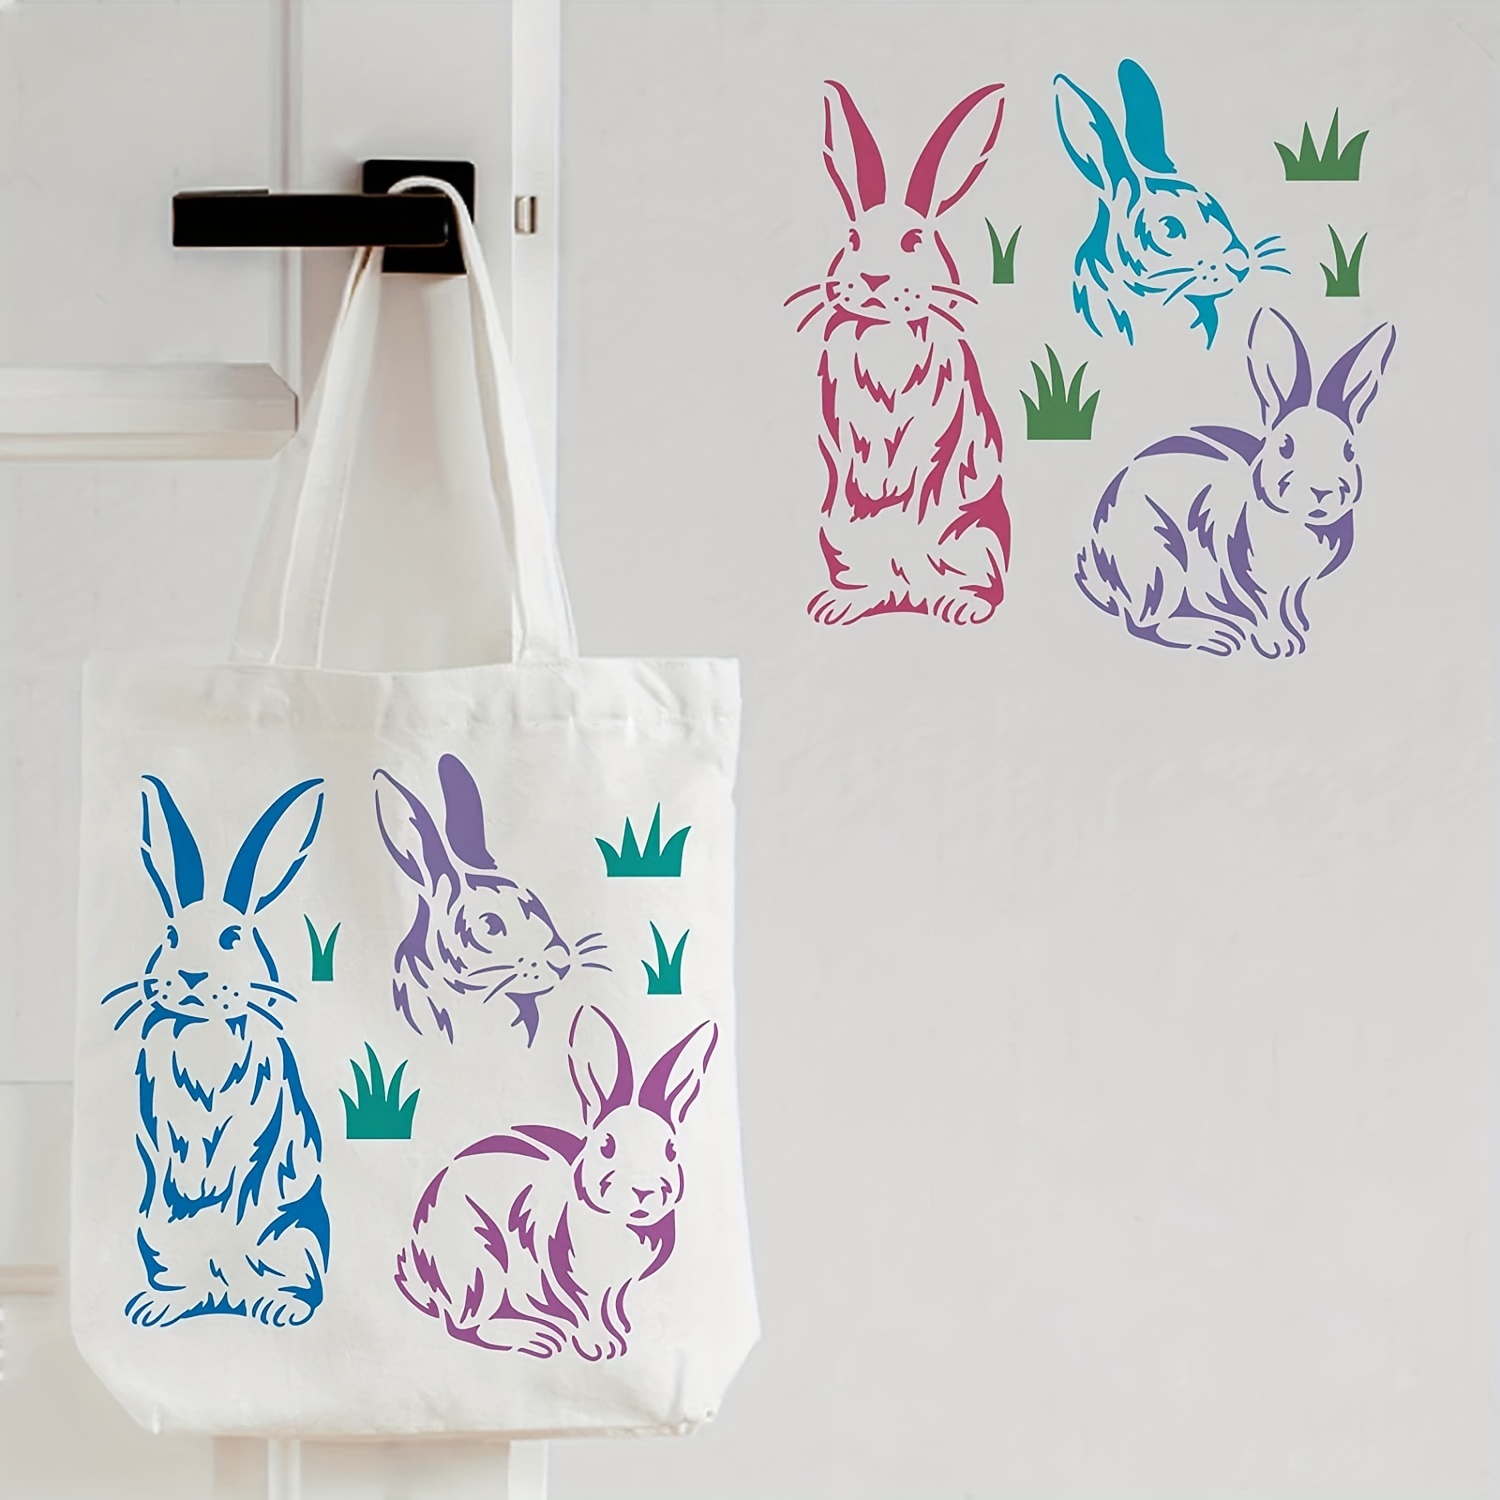 97 desenhos de coelho da Páscoa para colorir